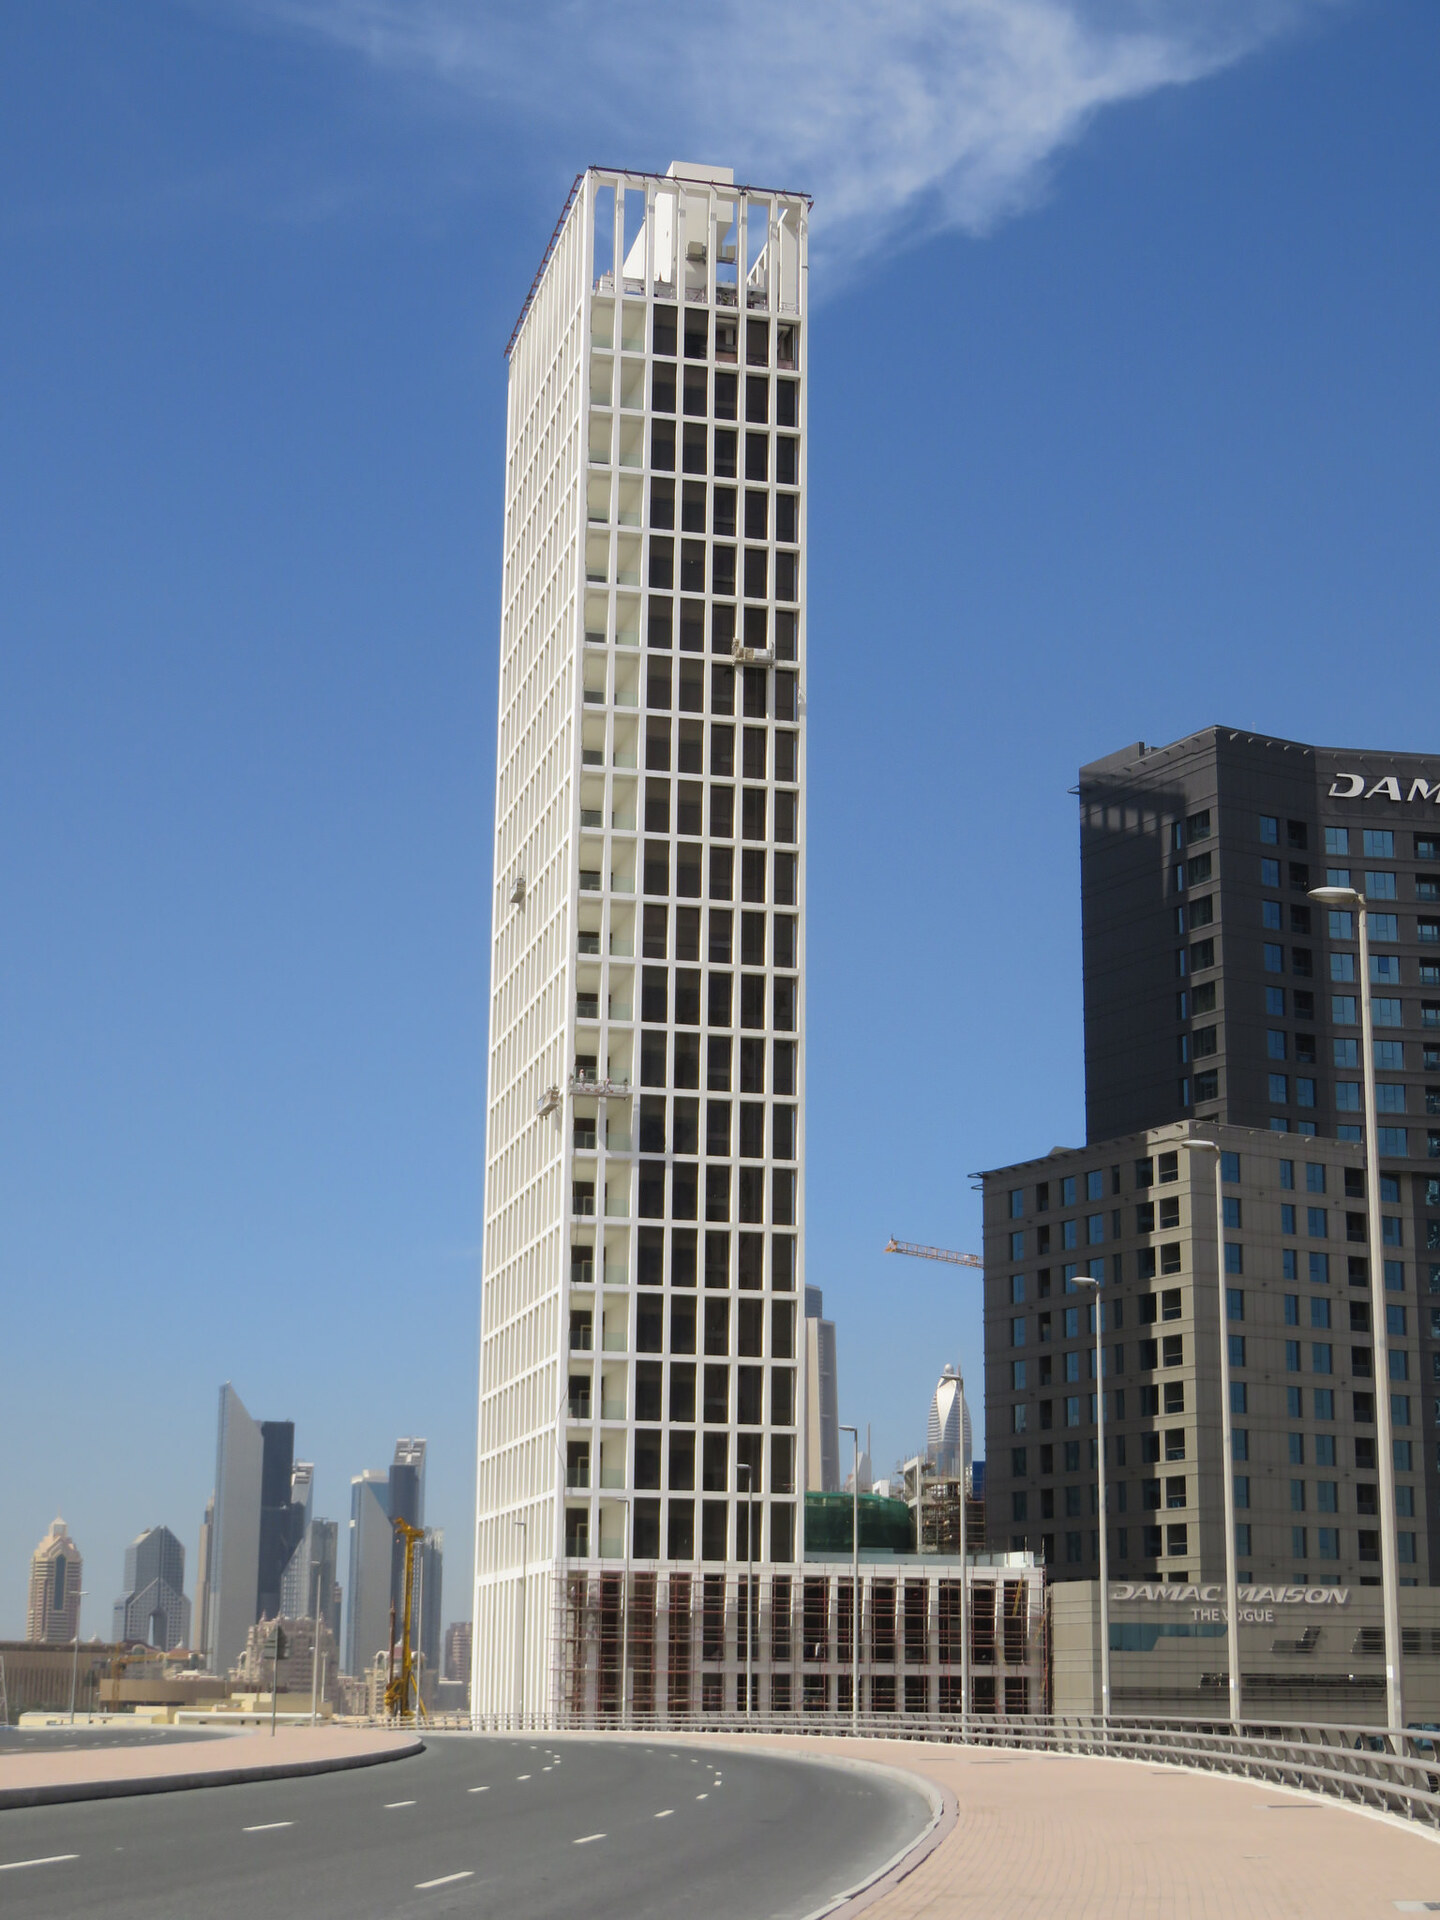 Fareed Tower in Dubai